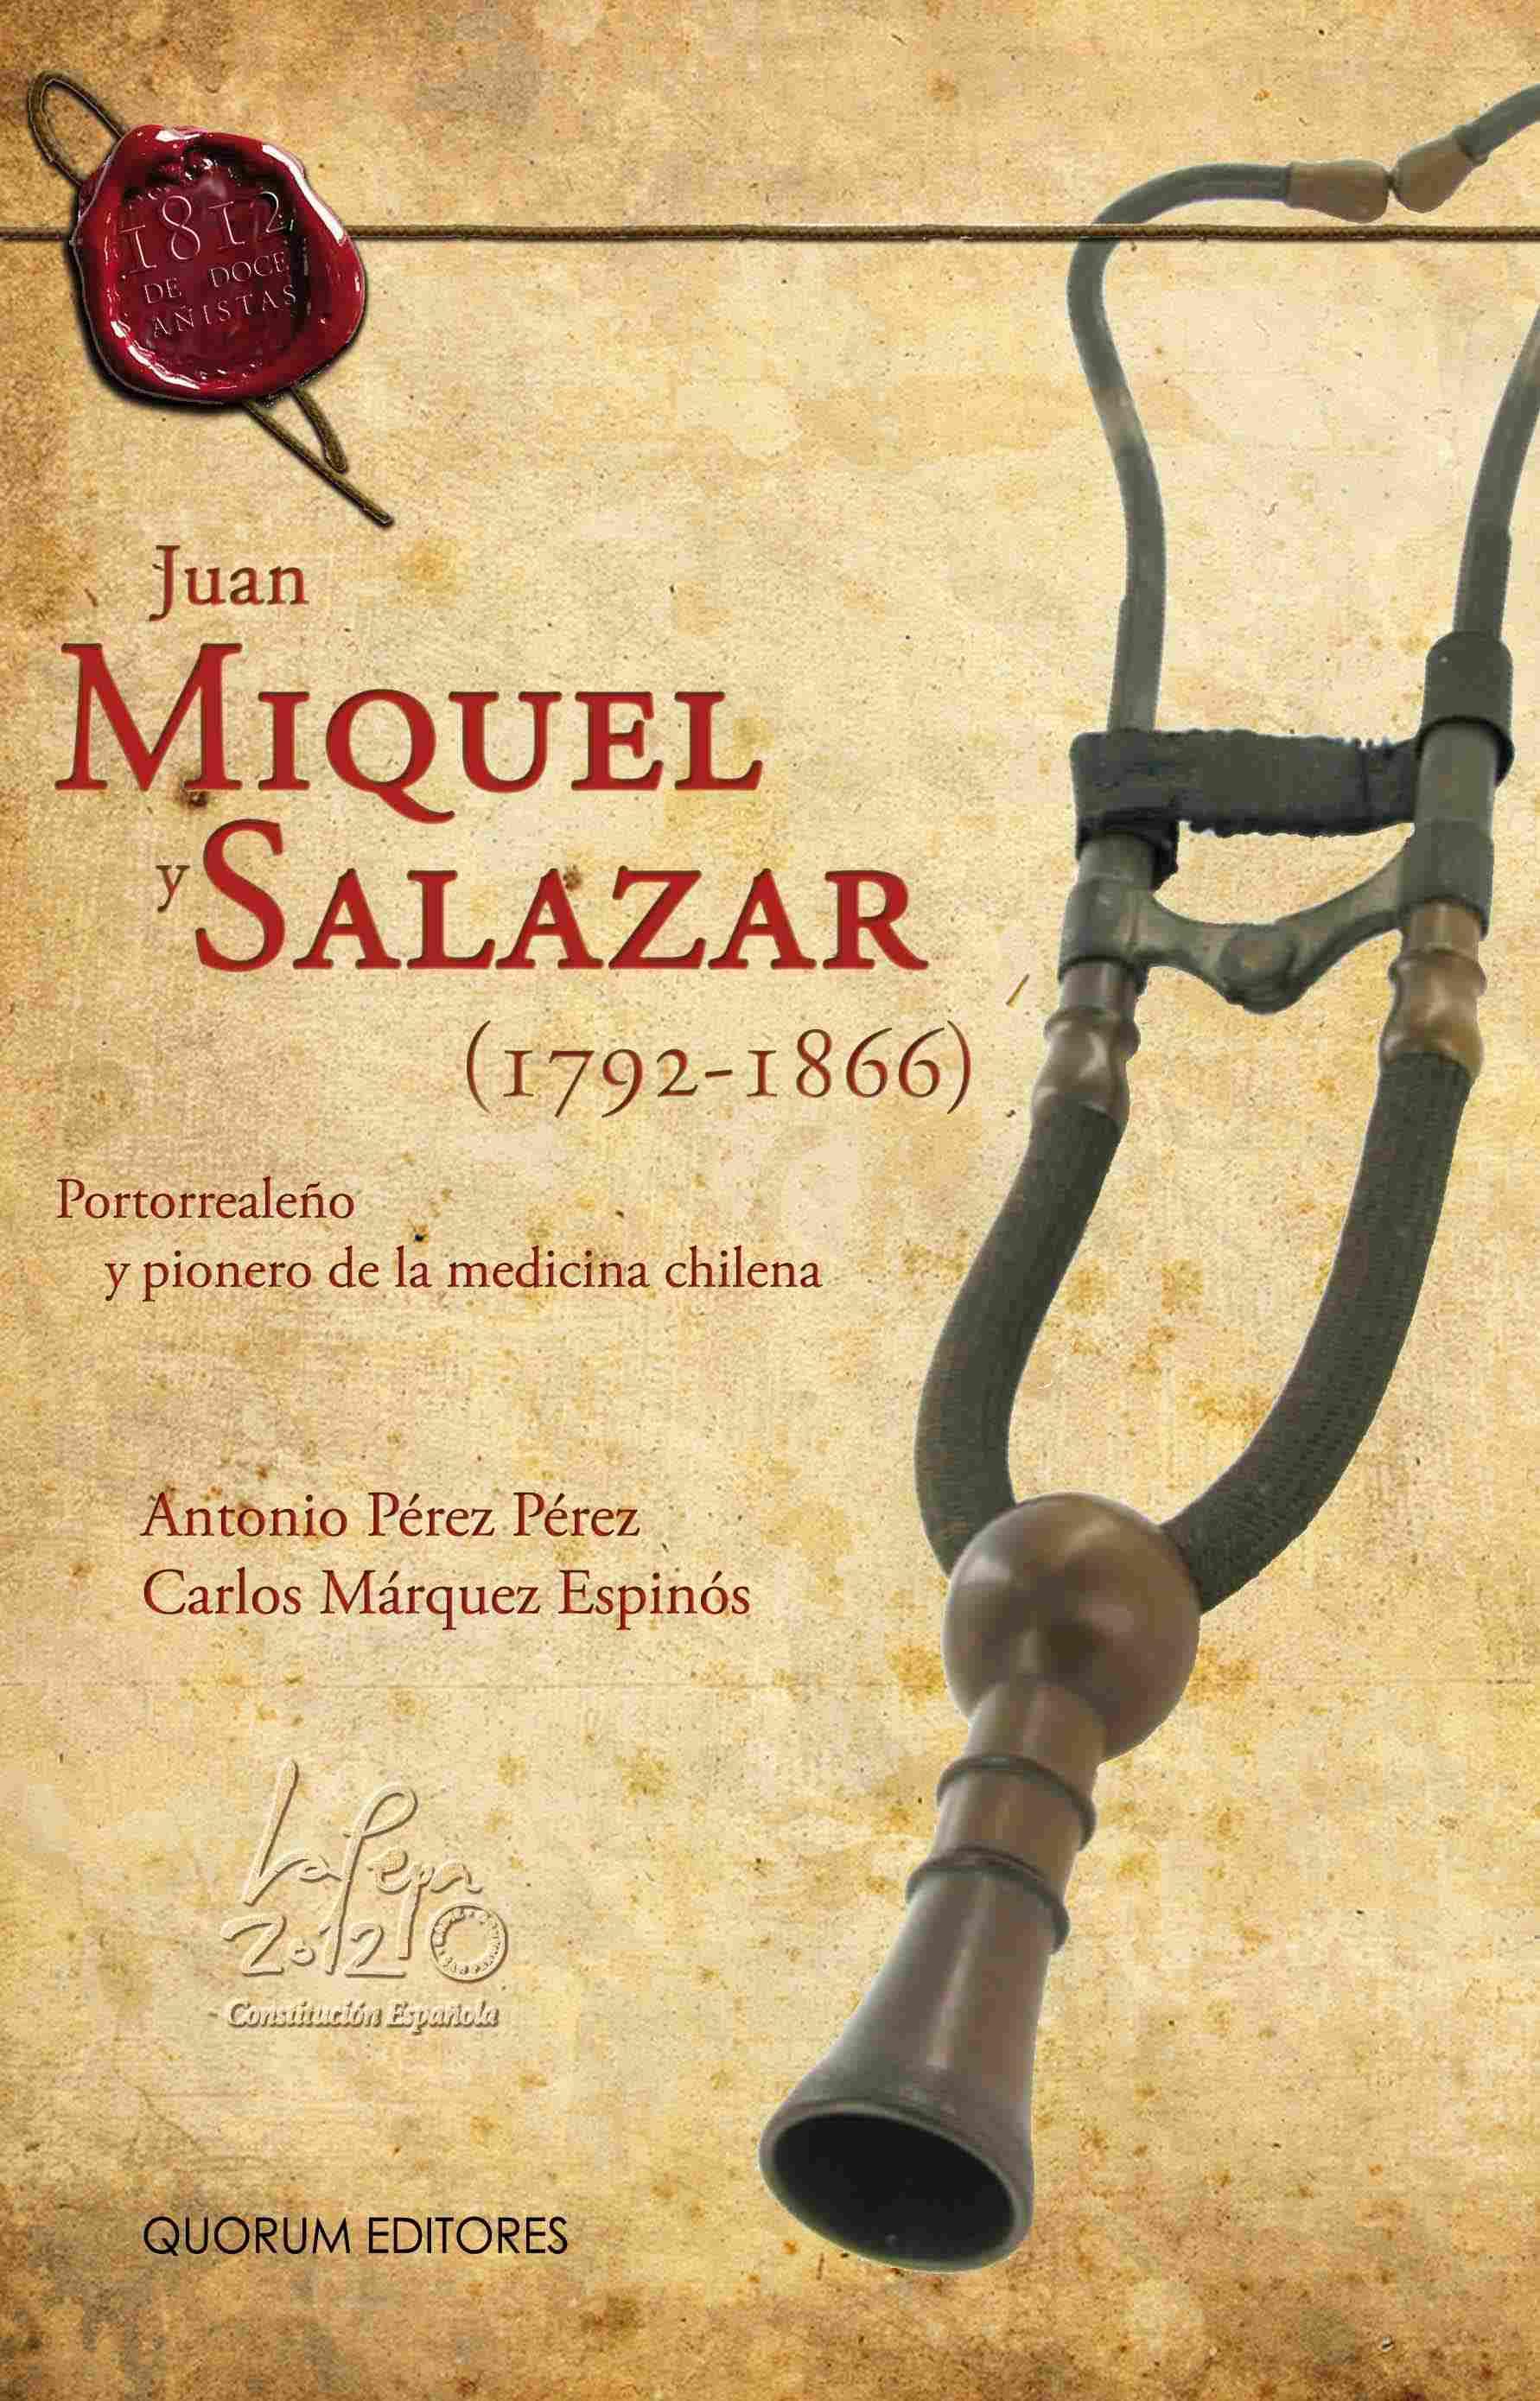 Imagen de portada del libro Juan Miquel y Salazar (1792-1866)